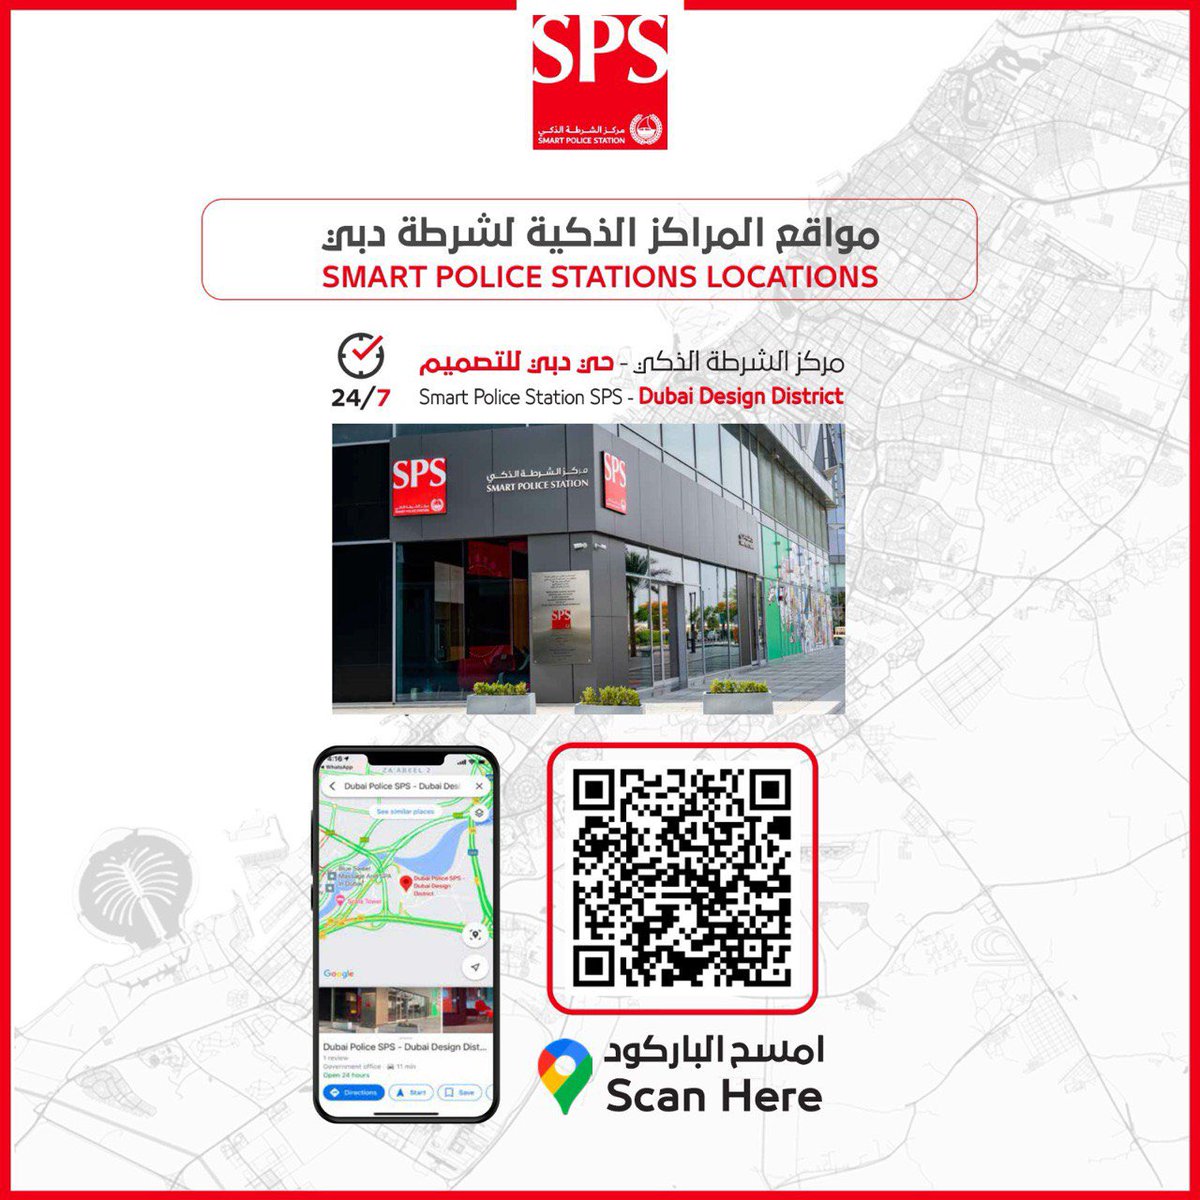 لِقاطني وزوار حي دبي للتصميم، نُقدم لكم خدماتٍ ذكية وفق أحدث التقنيات وأفضل المعايير على مدار الساعة. بالقرب منكم أينما كنتم، نحو مجتمعٍ آمن ومبتكر. 📍 مركز شرطة دبي الذكي - حي دبي للتصميم maps.app.goo.gl/GLjm5RLrEUyAUC… #مركز_الشرطة_الذكي